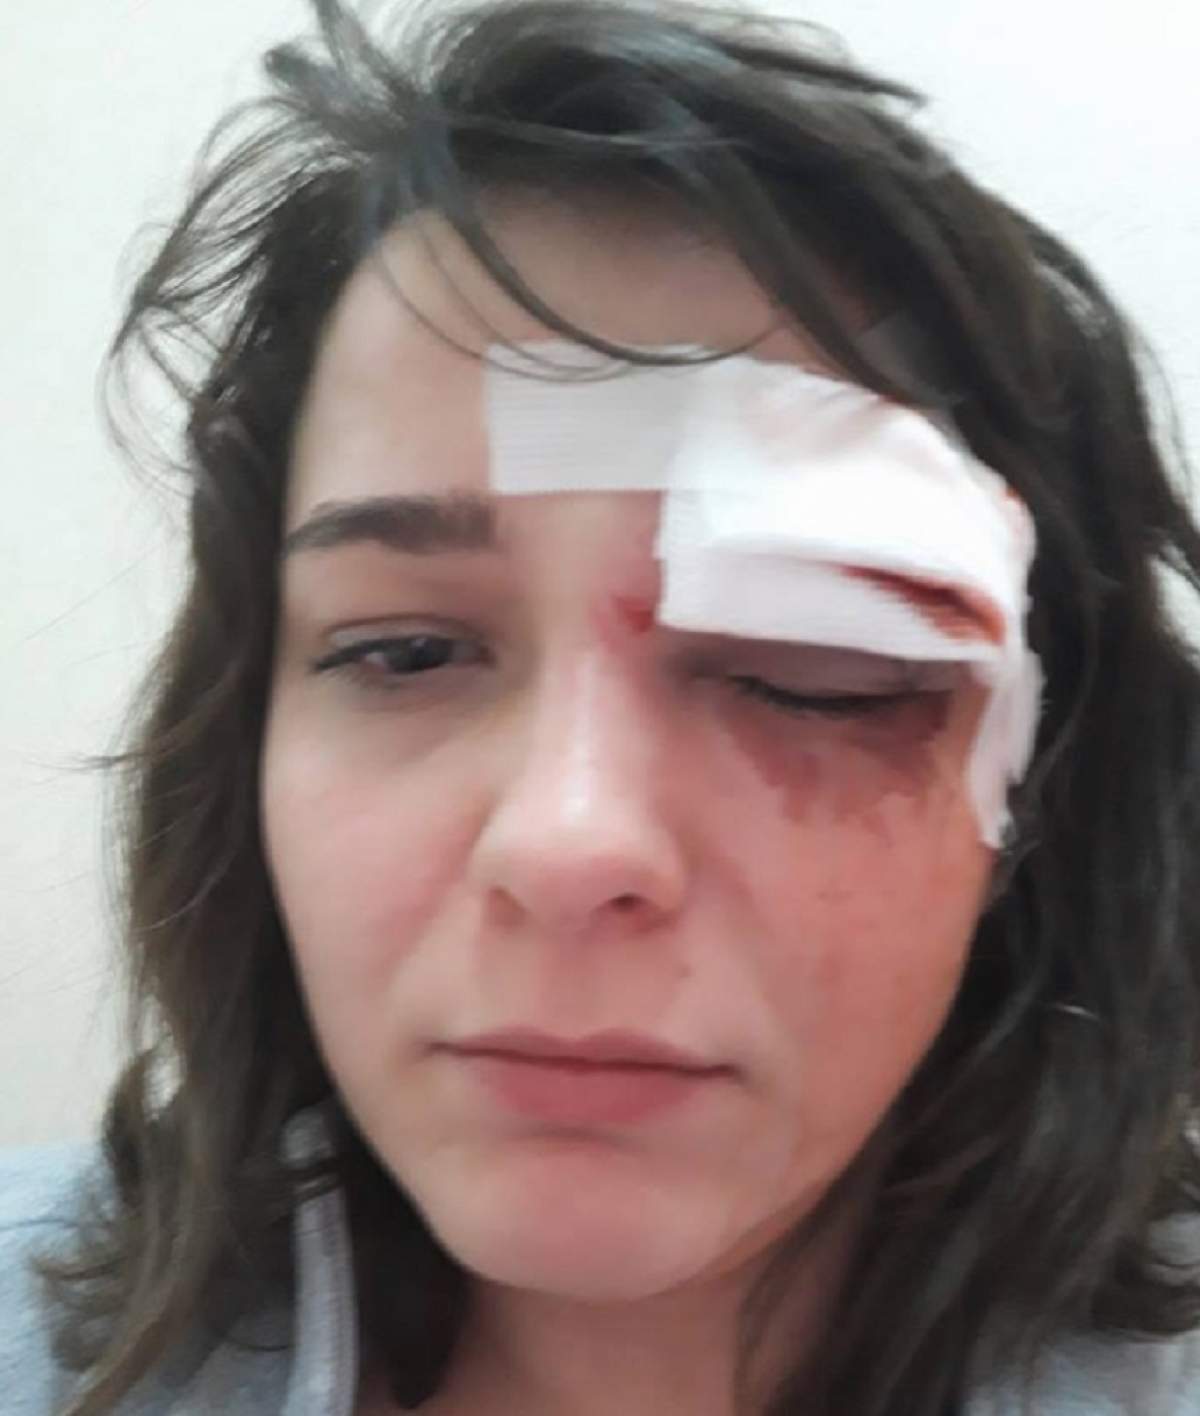 FOTO / Imagine şocantă! O tânără a fost bătută şi tâlhărită pe o stradă din Bucureşti